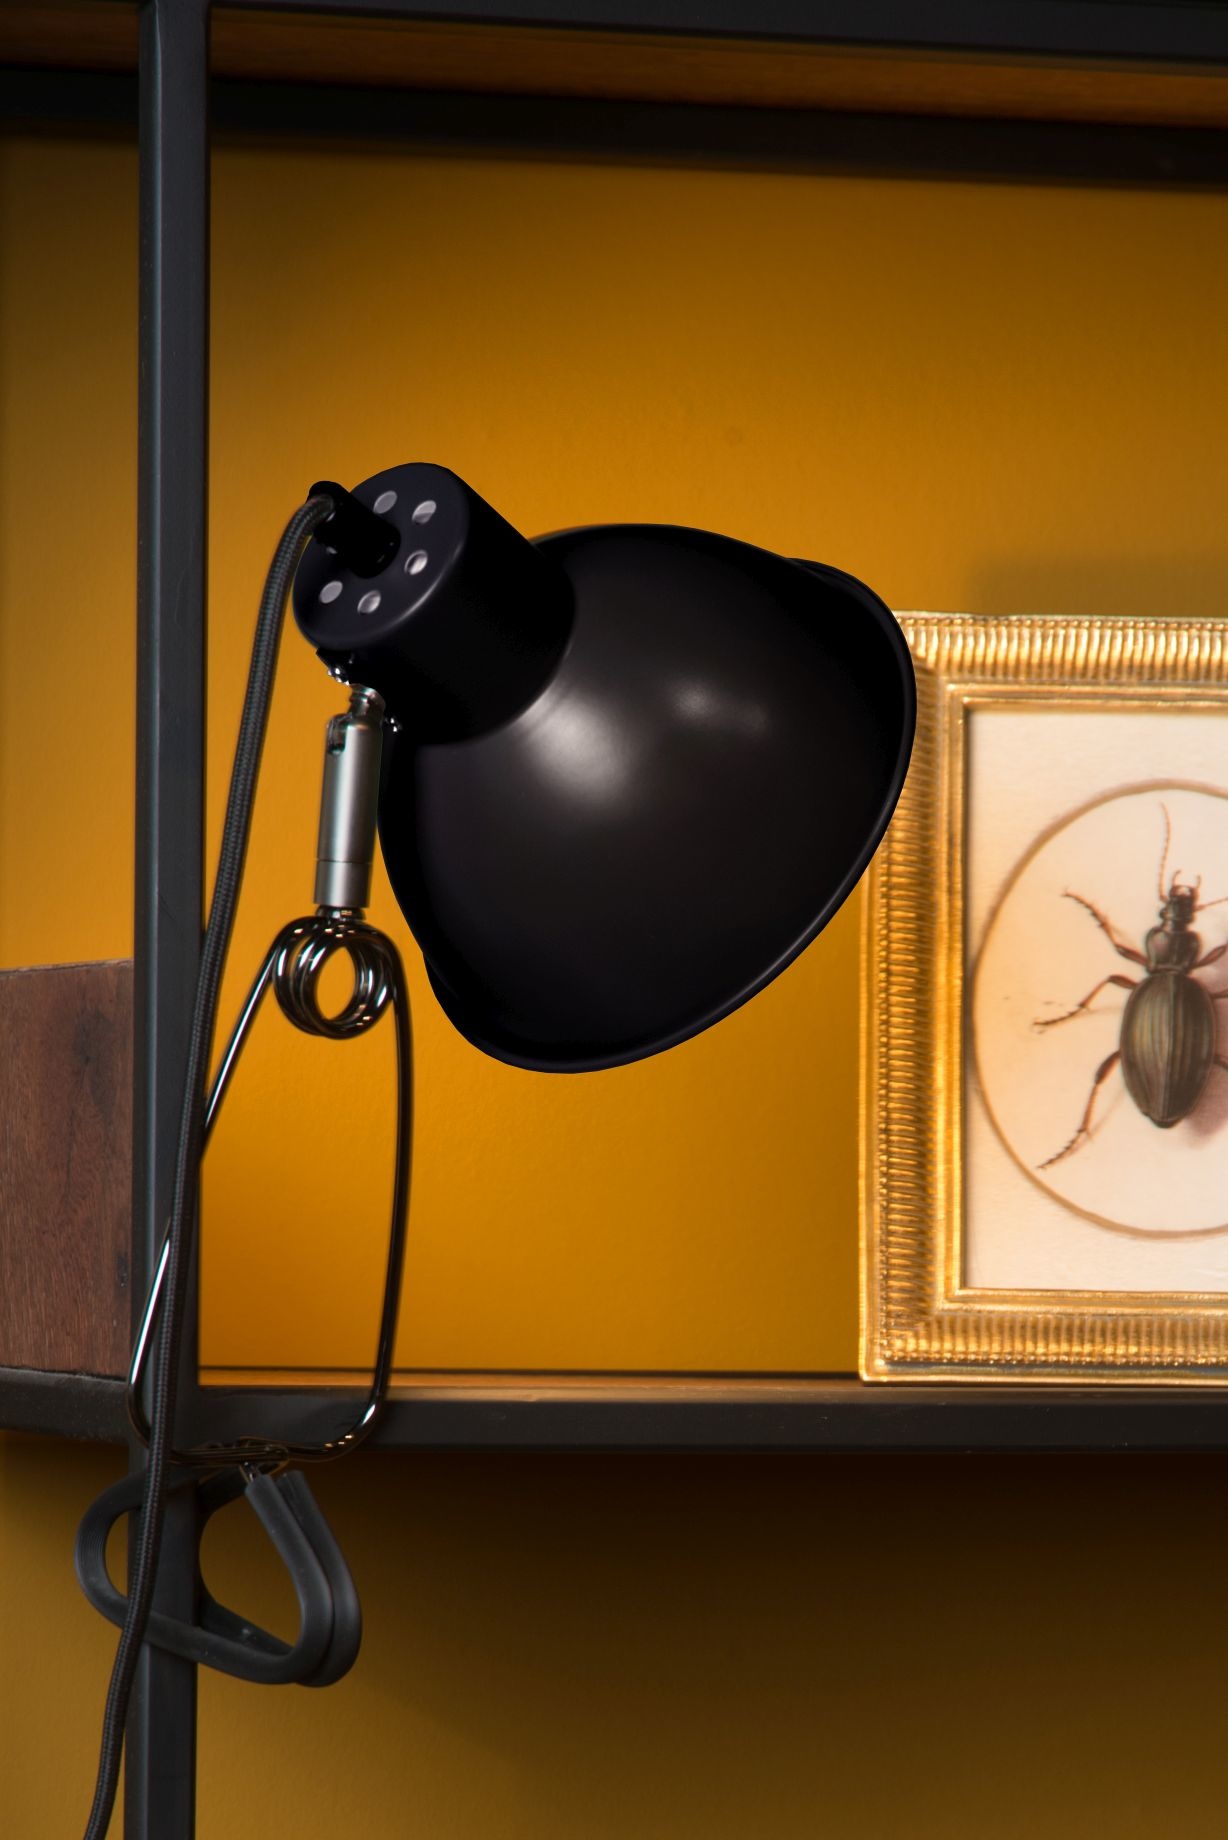 DIGITUS Lampe LED avec pince de fixation et port USB, noir